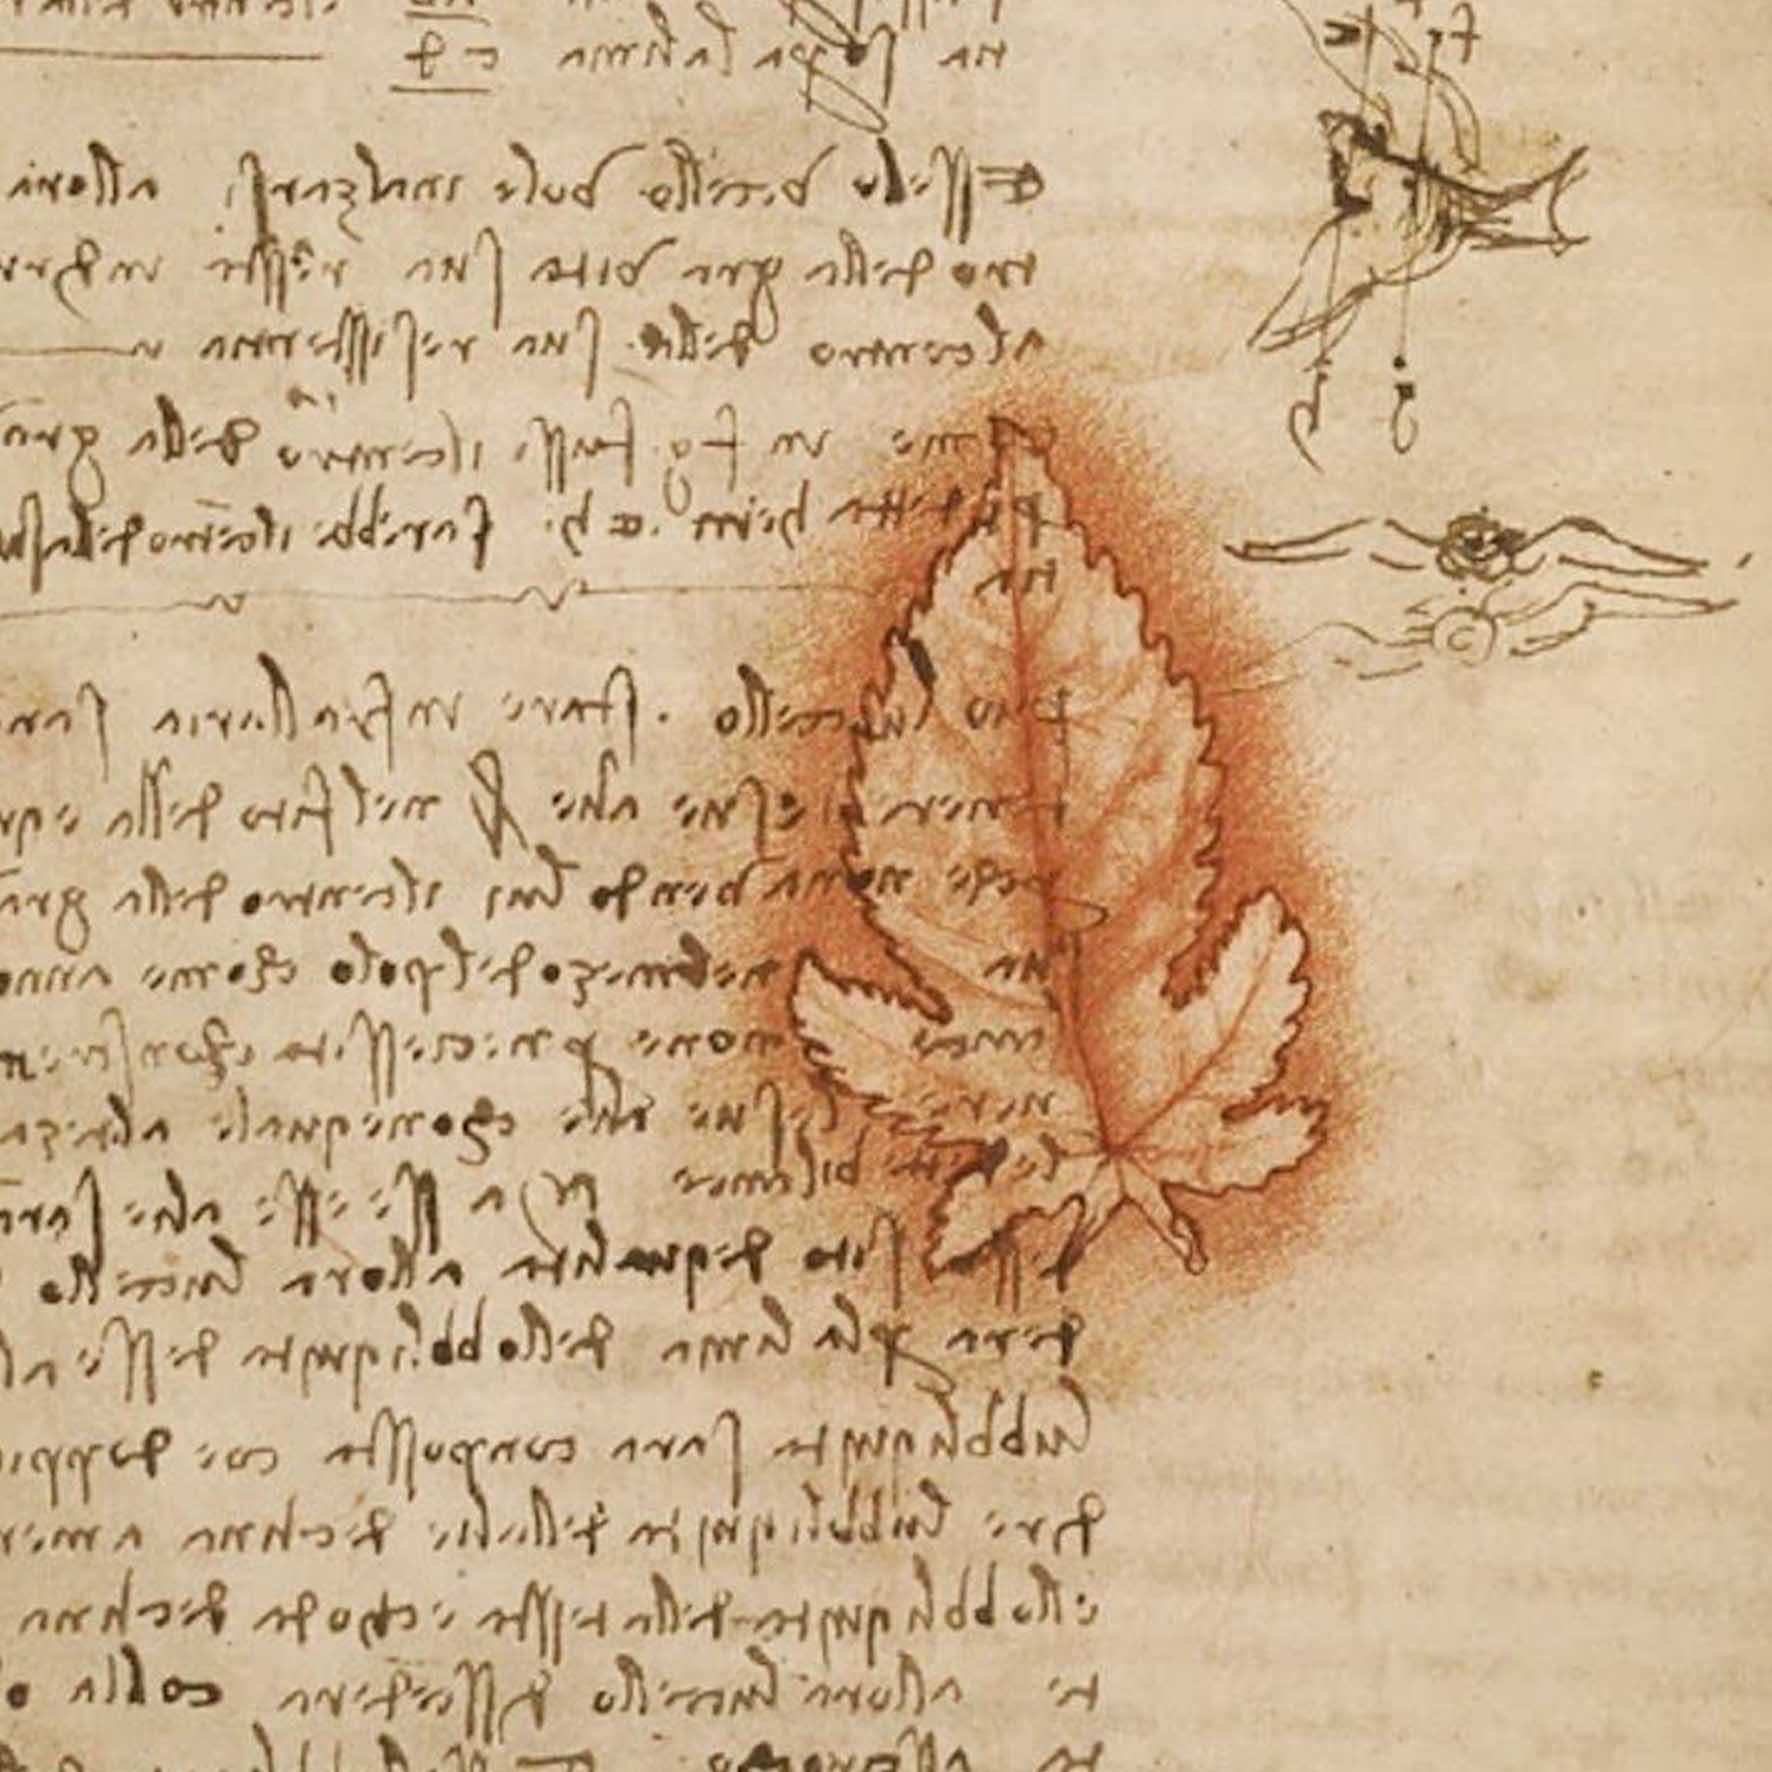 Esposizione del Codice del Volo degli Uccelli di Leonardo Da Vinci